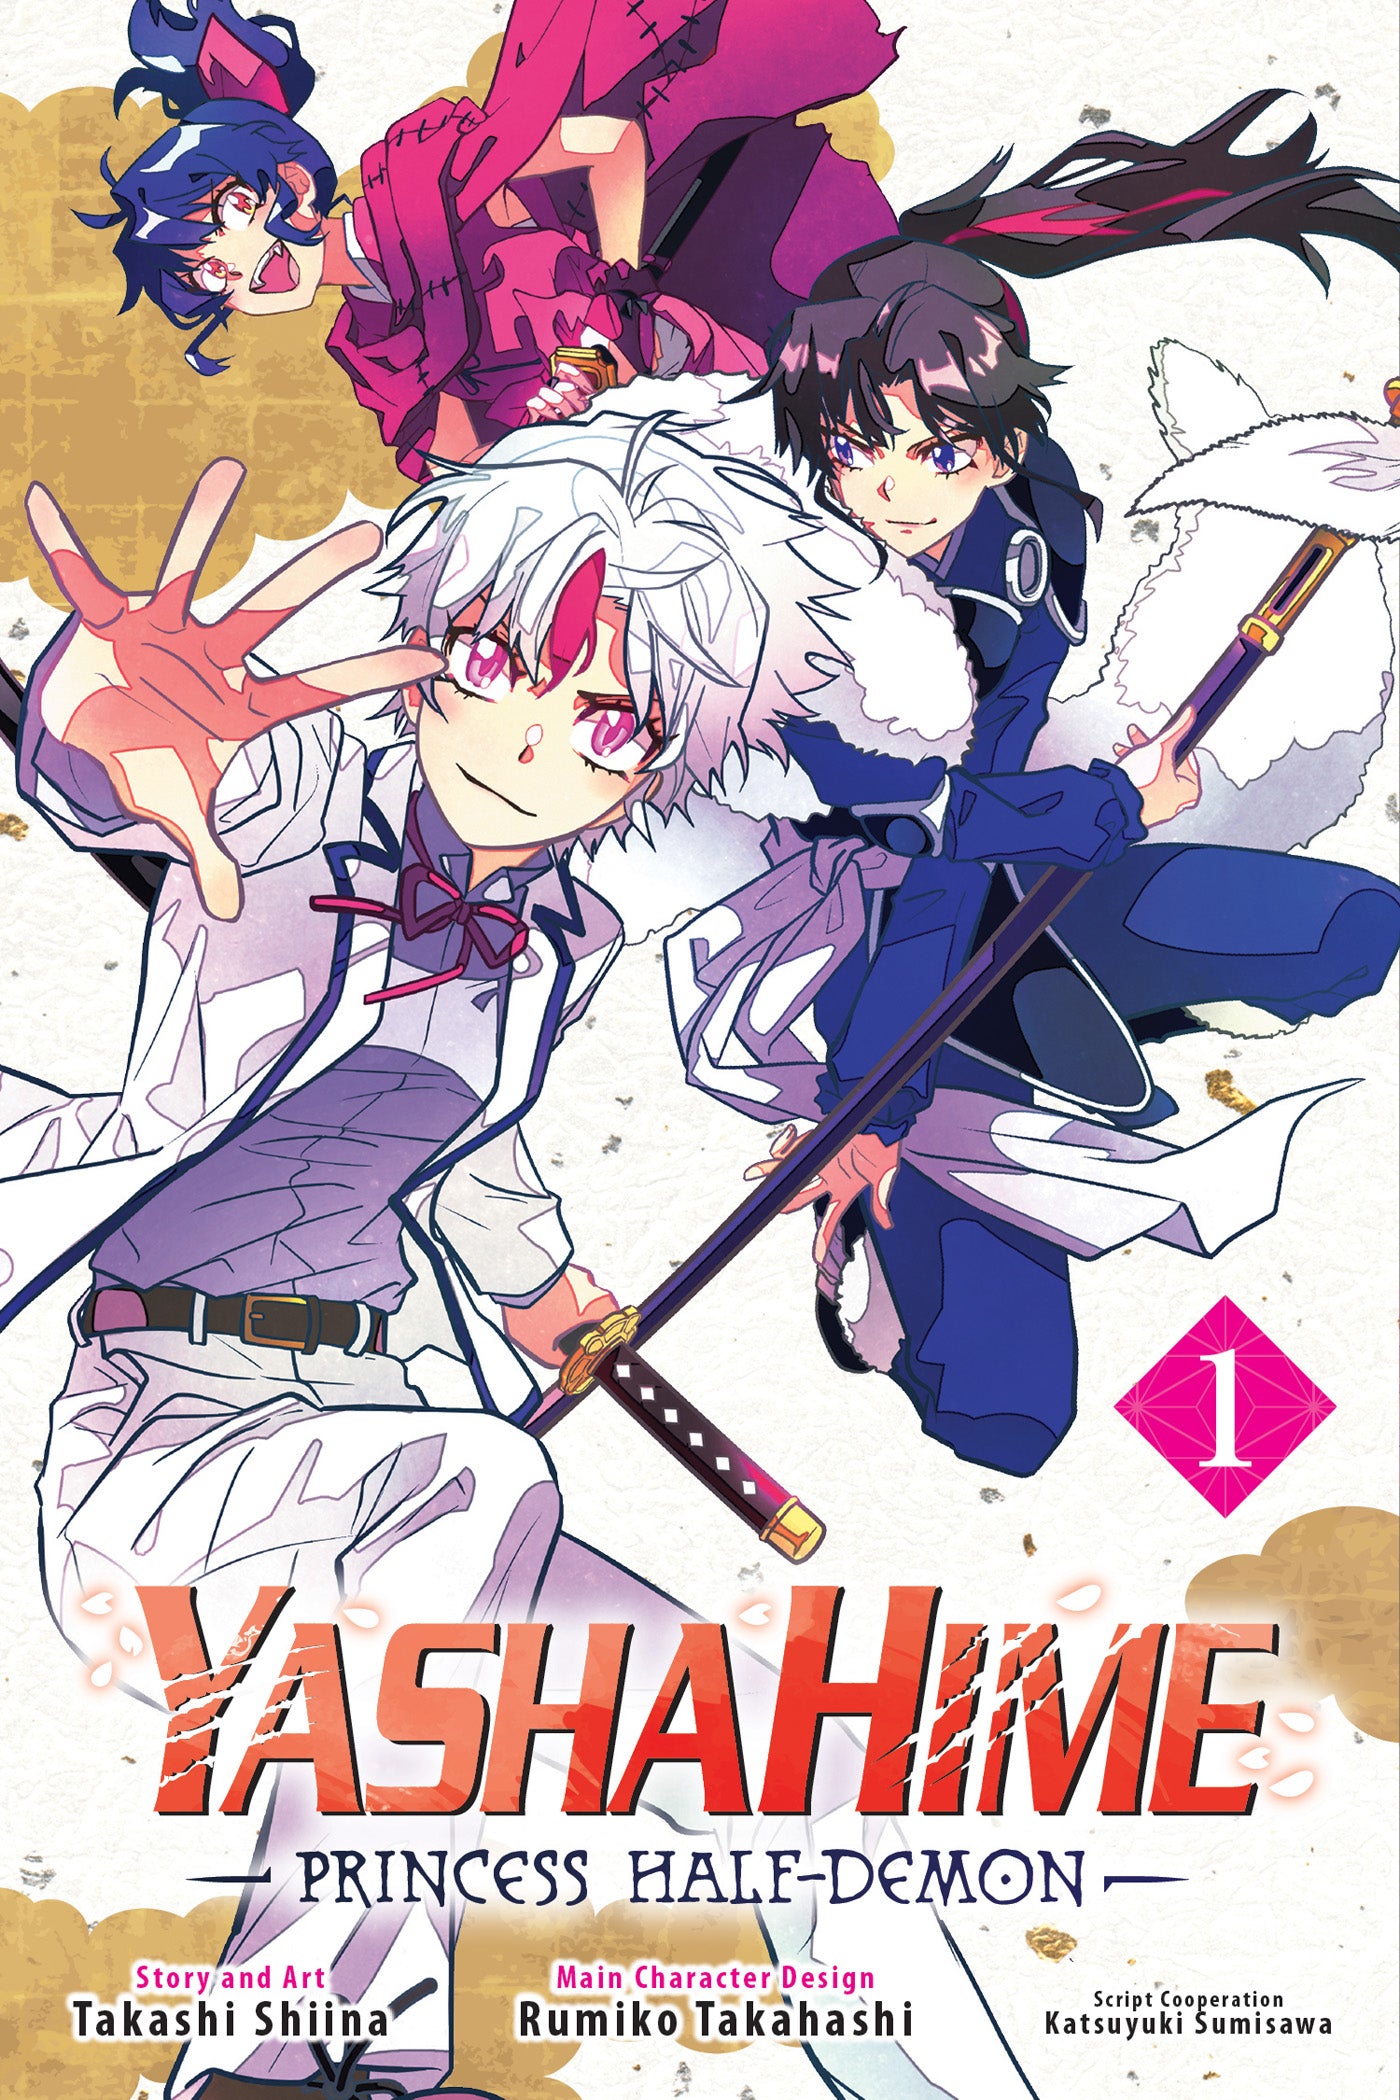 Yashahime Princess Half Demon Graphic Novel Volume 01 | L.A. Mood Comics and Games